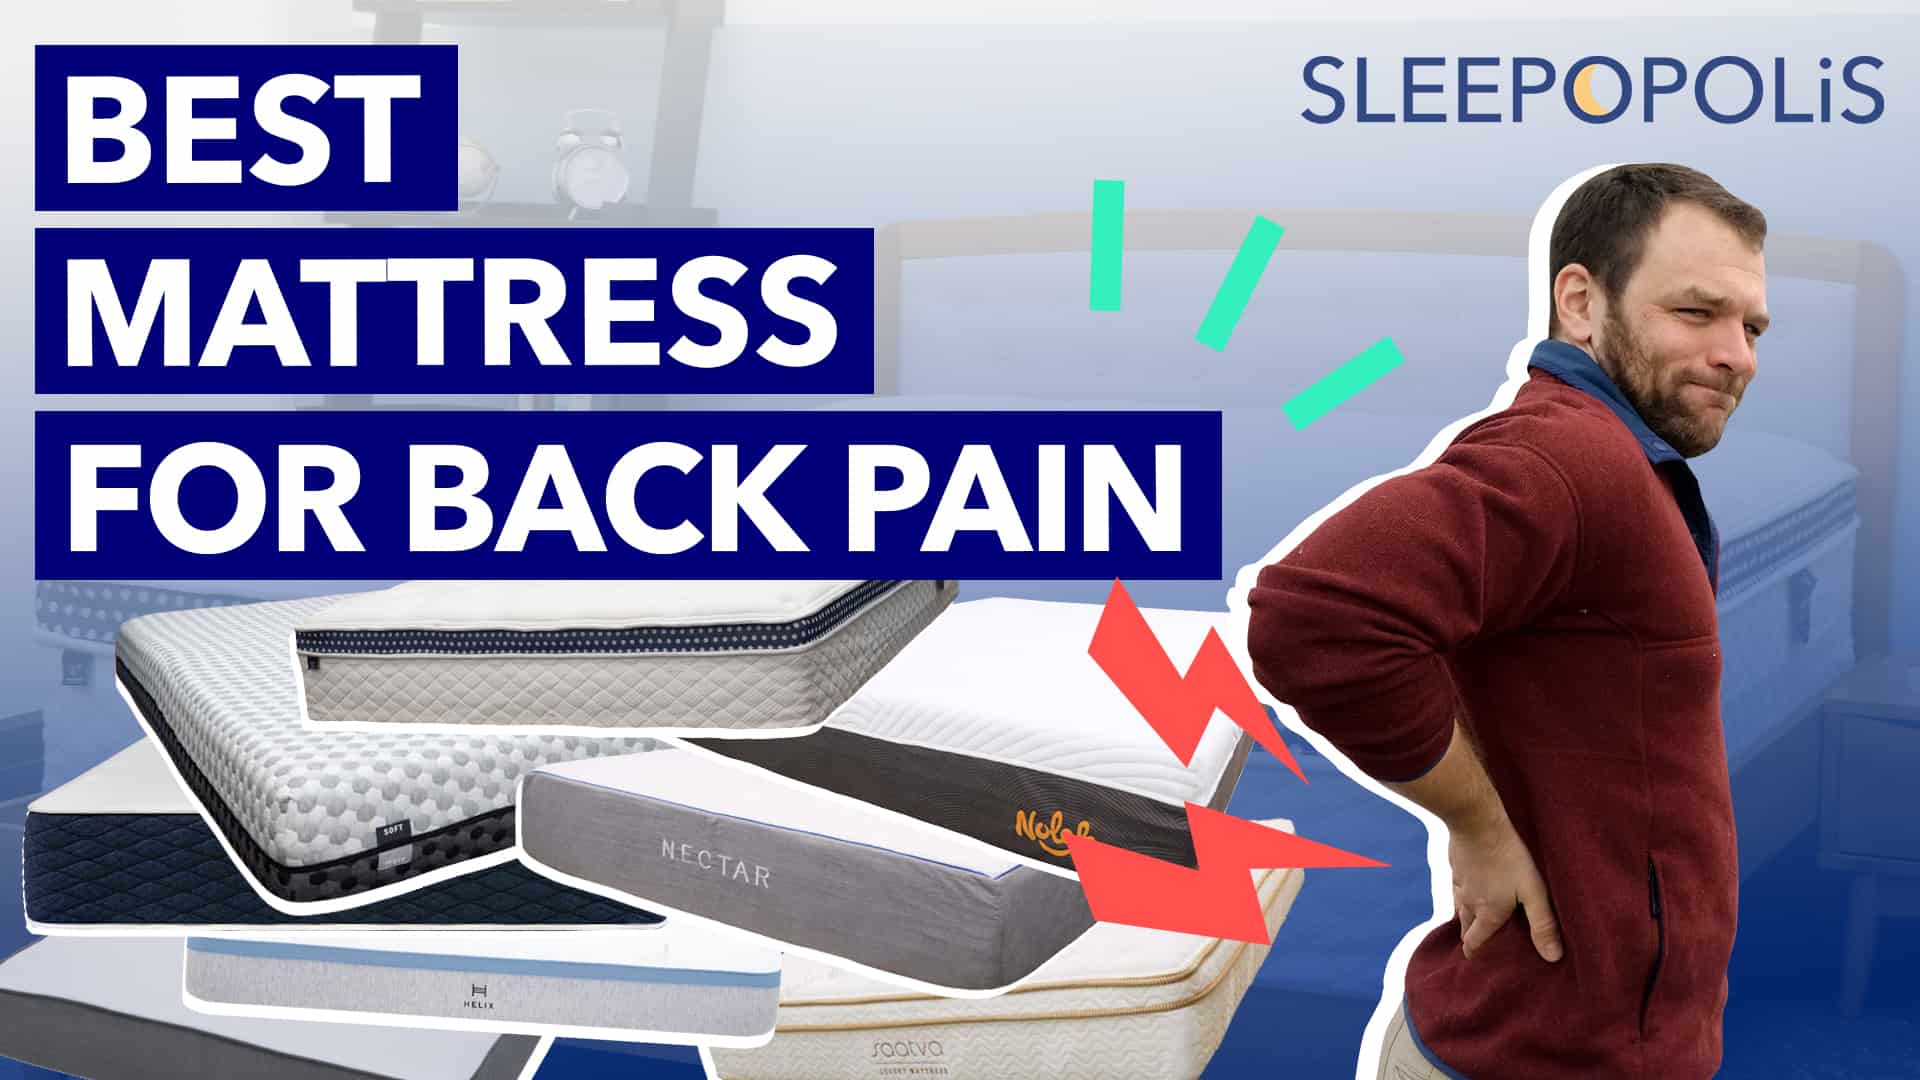 Best Mattress For Back Pain (2020) Full Guide & Review Sleepopolis